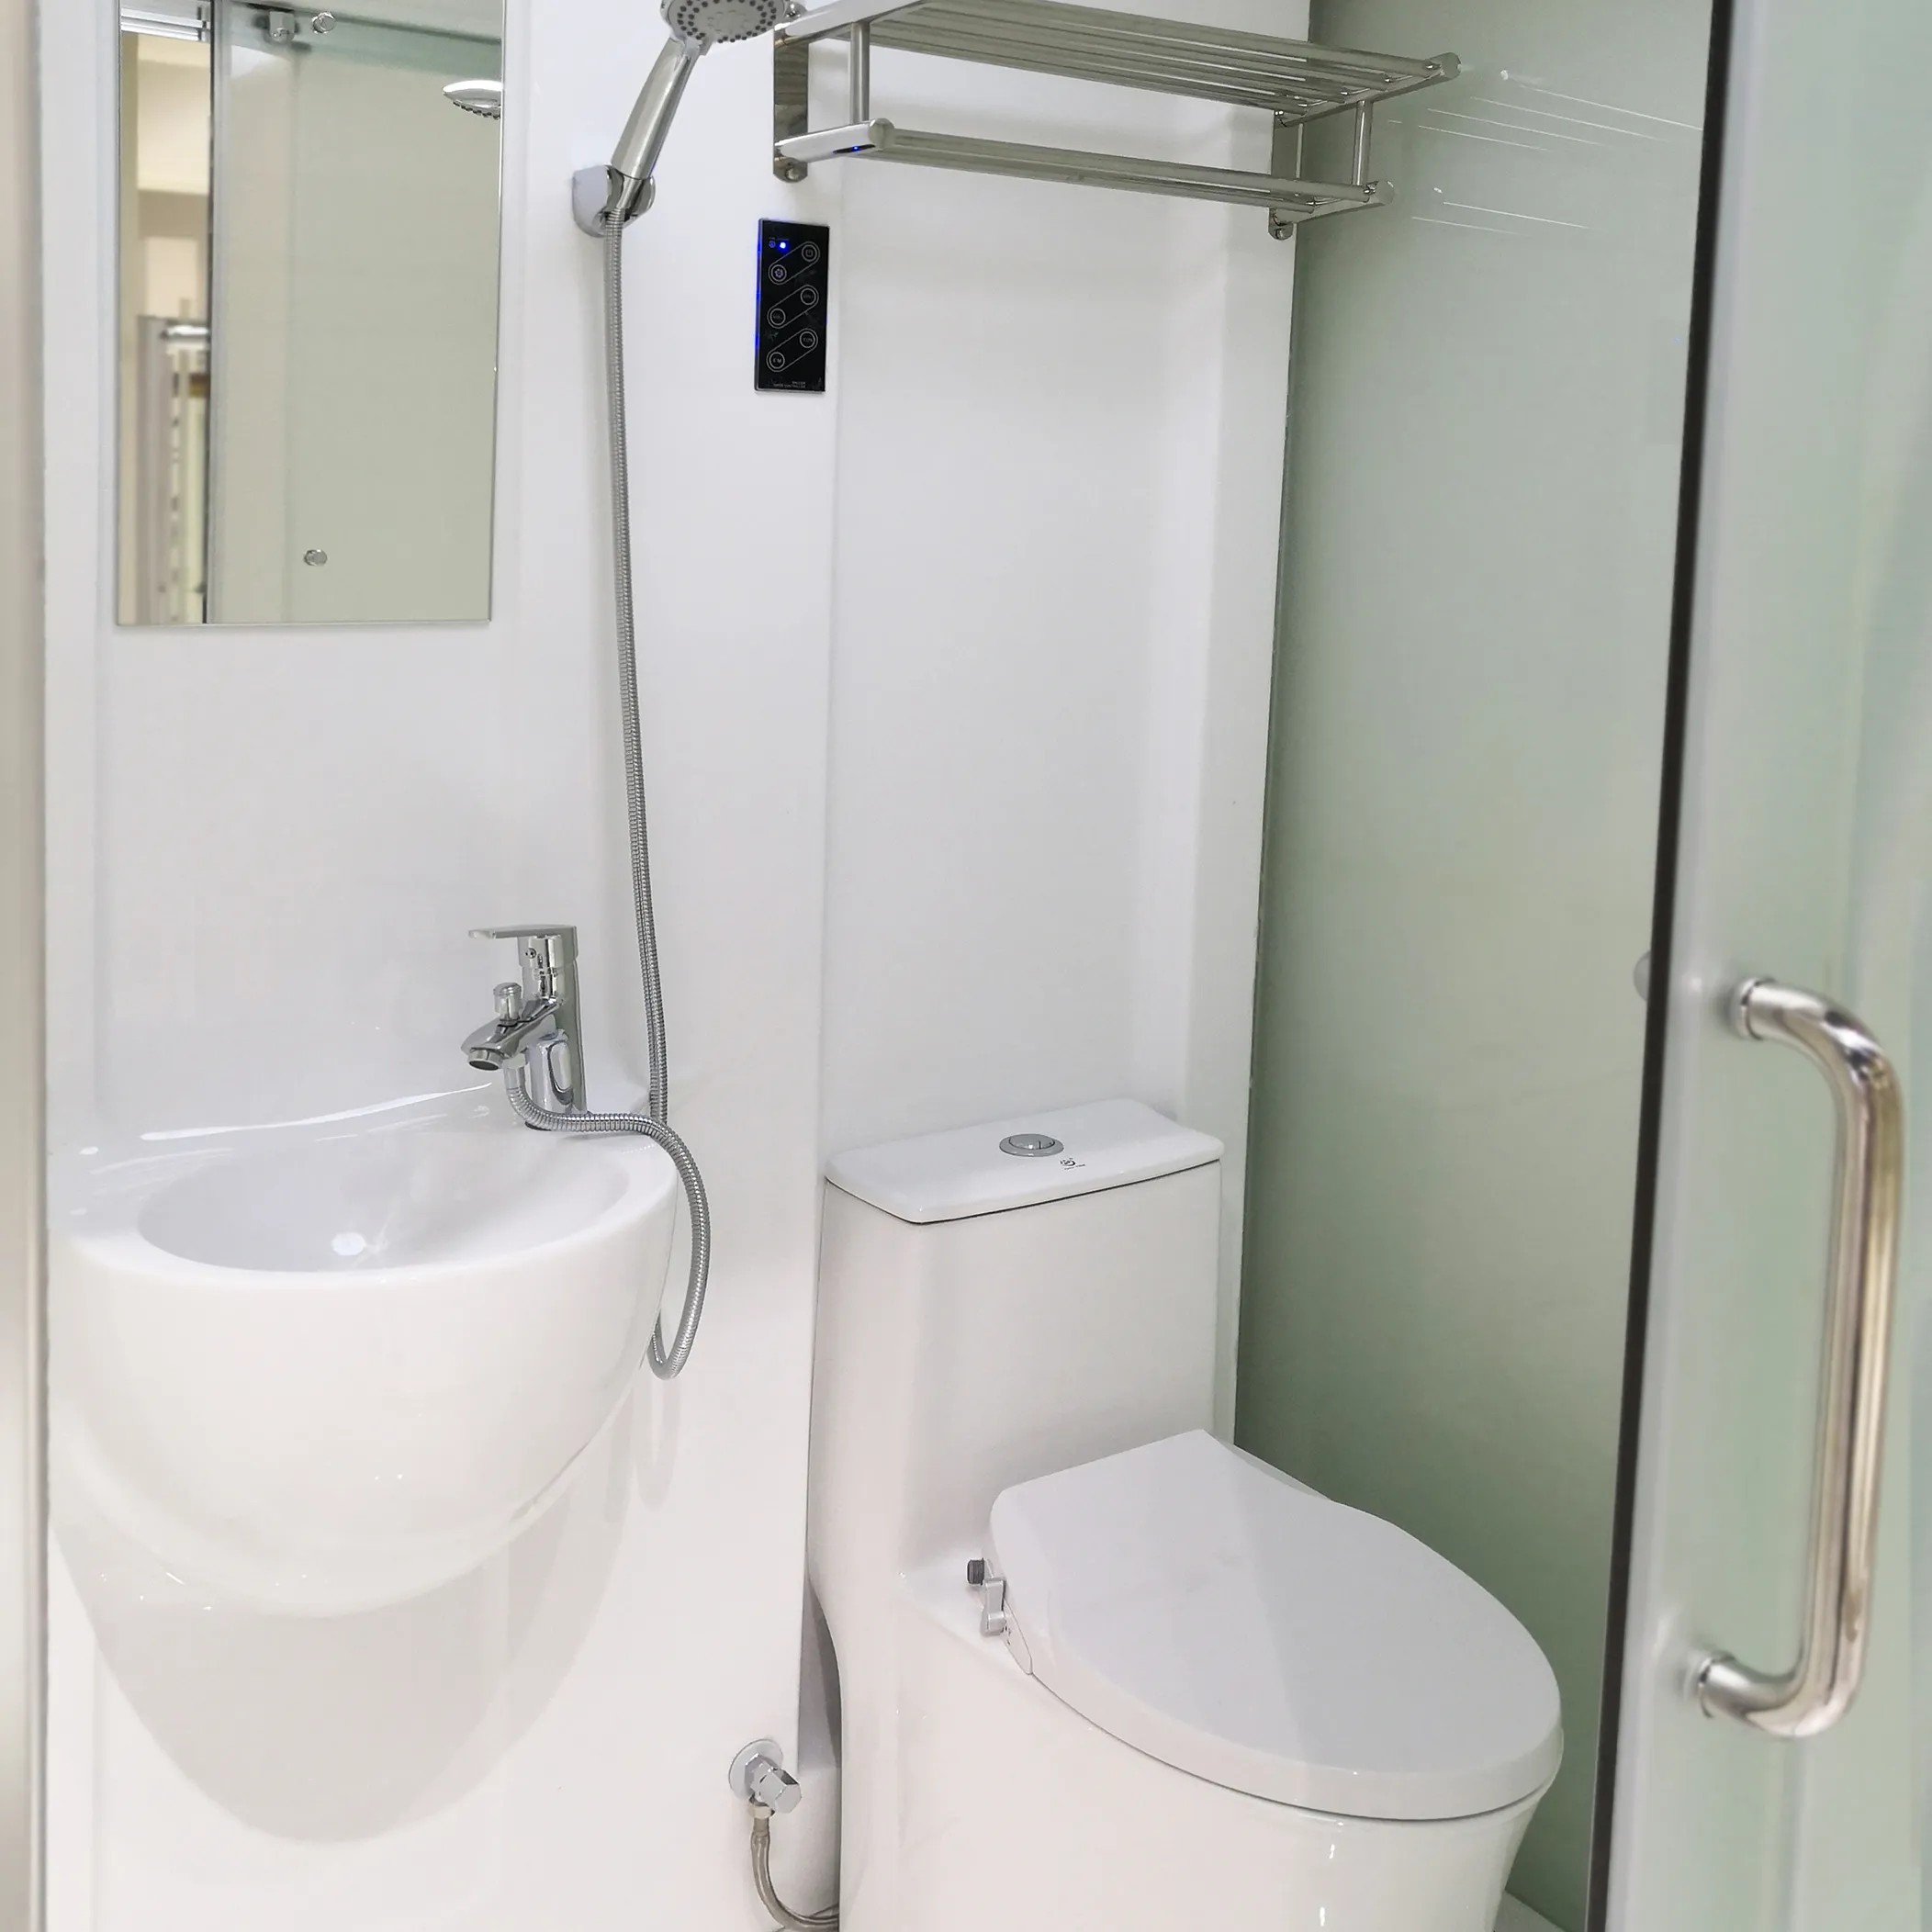 Cabina de ducha de baño de aleación de aluminio todo en uno, cabina de ducha de vidrio deslizante cerrada de fácil instalación